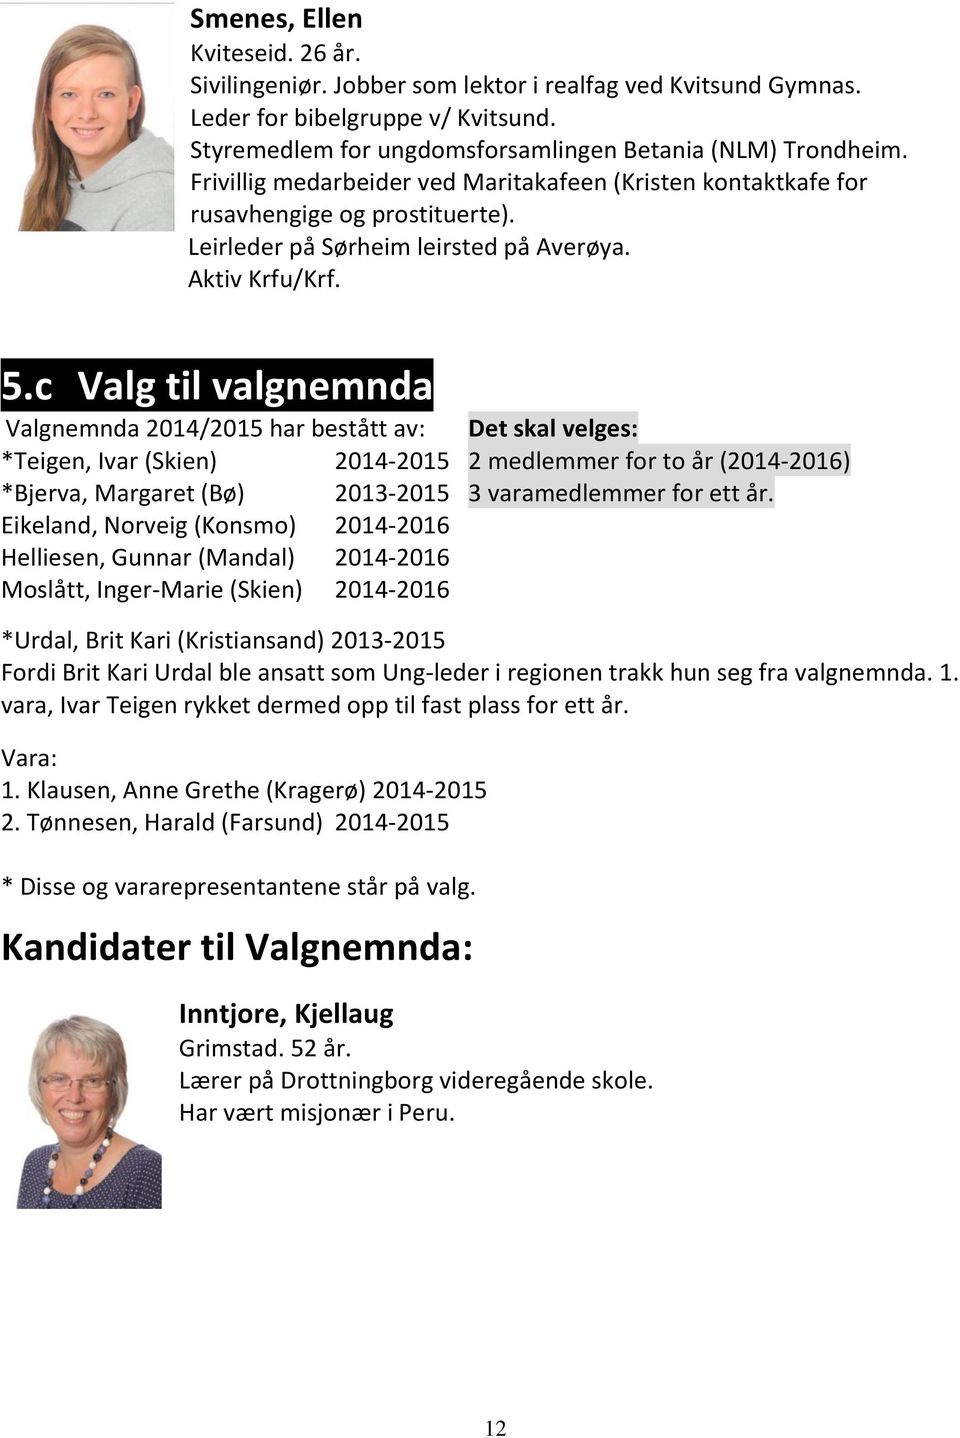 c Valg til valgnemnda Valgnemnda 2014/2015 har bestått av: Det skal velges: *Teigen, Ivar (Skien) 2014-2015 2 medlemmer for to år (2014-2016) *Bjerva, Margaret (Bø) 2013-2015 3 varamedlemmer for ett